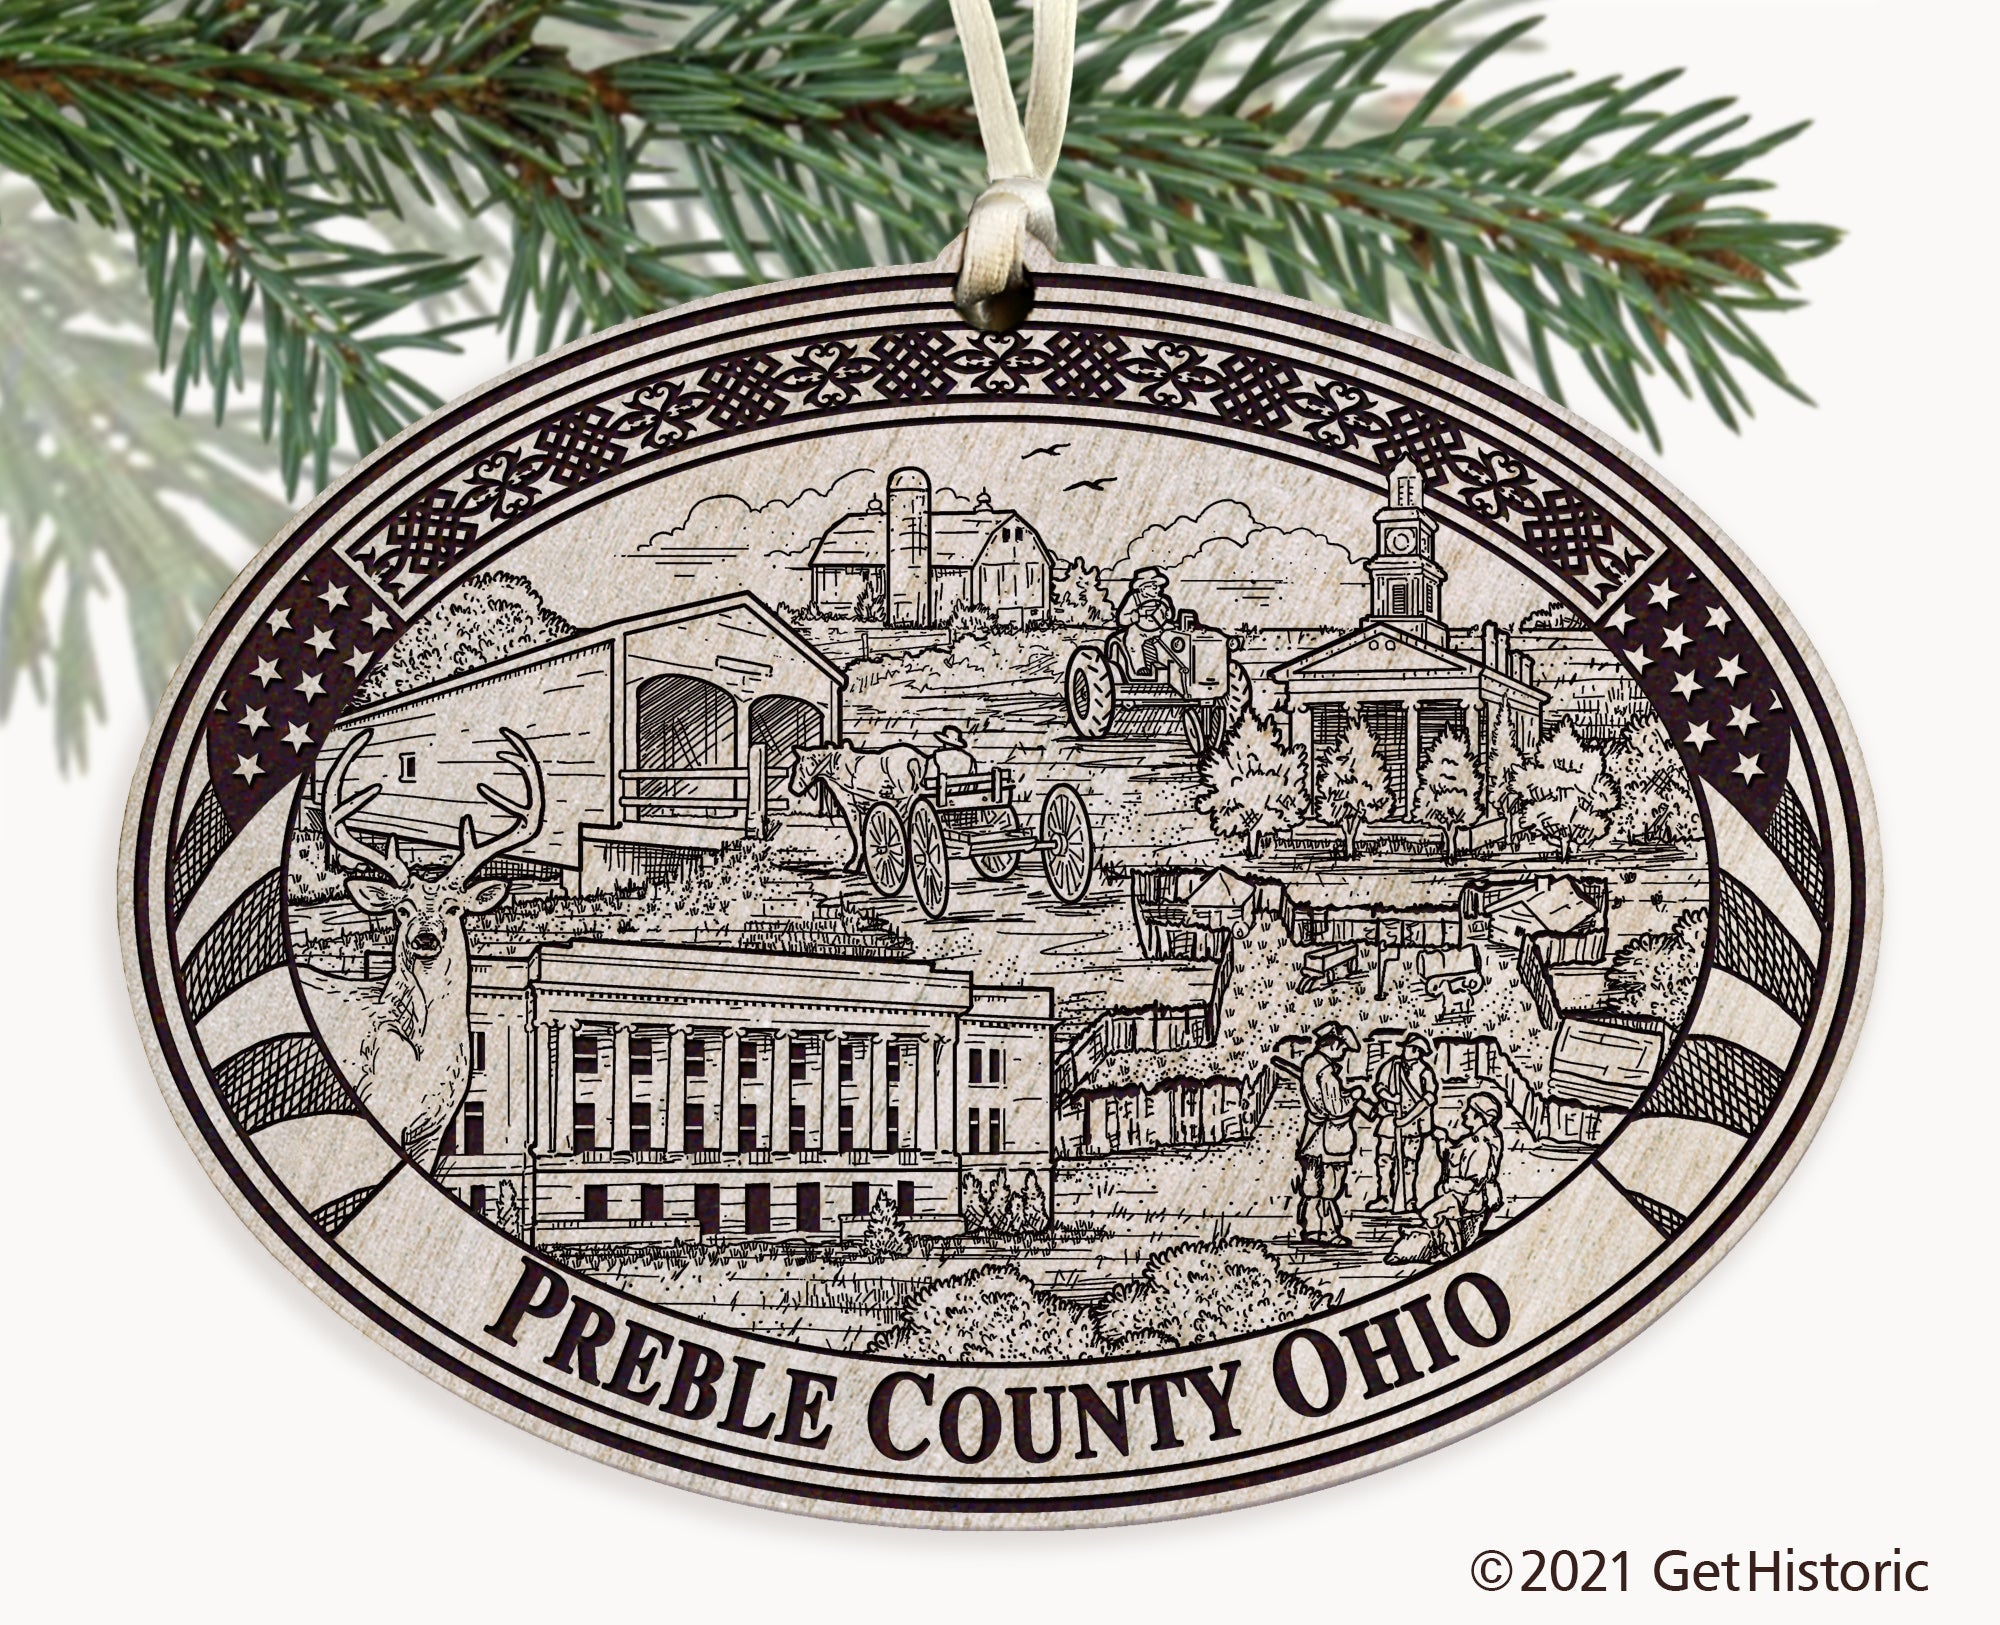 Preble County Ohio Engraved Ornament